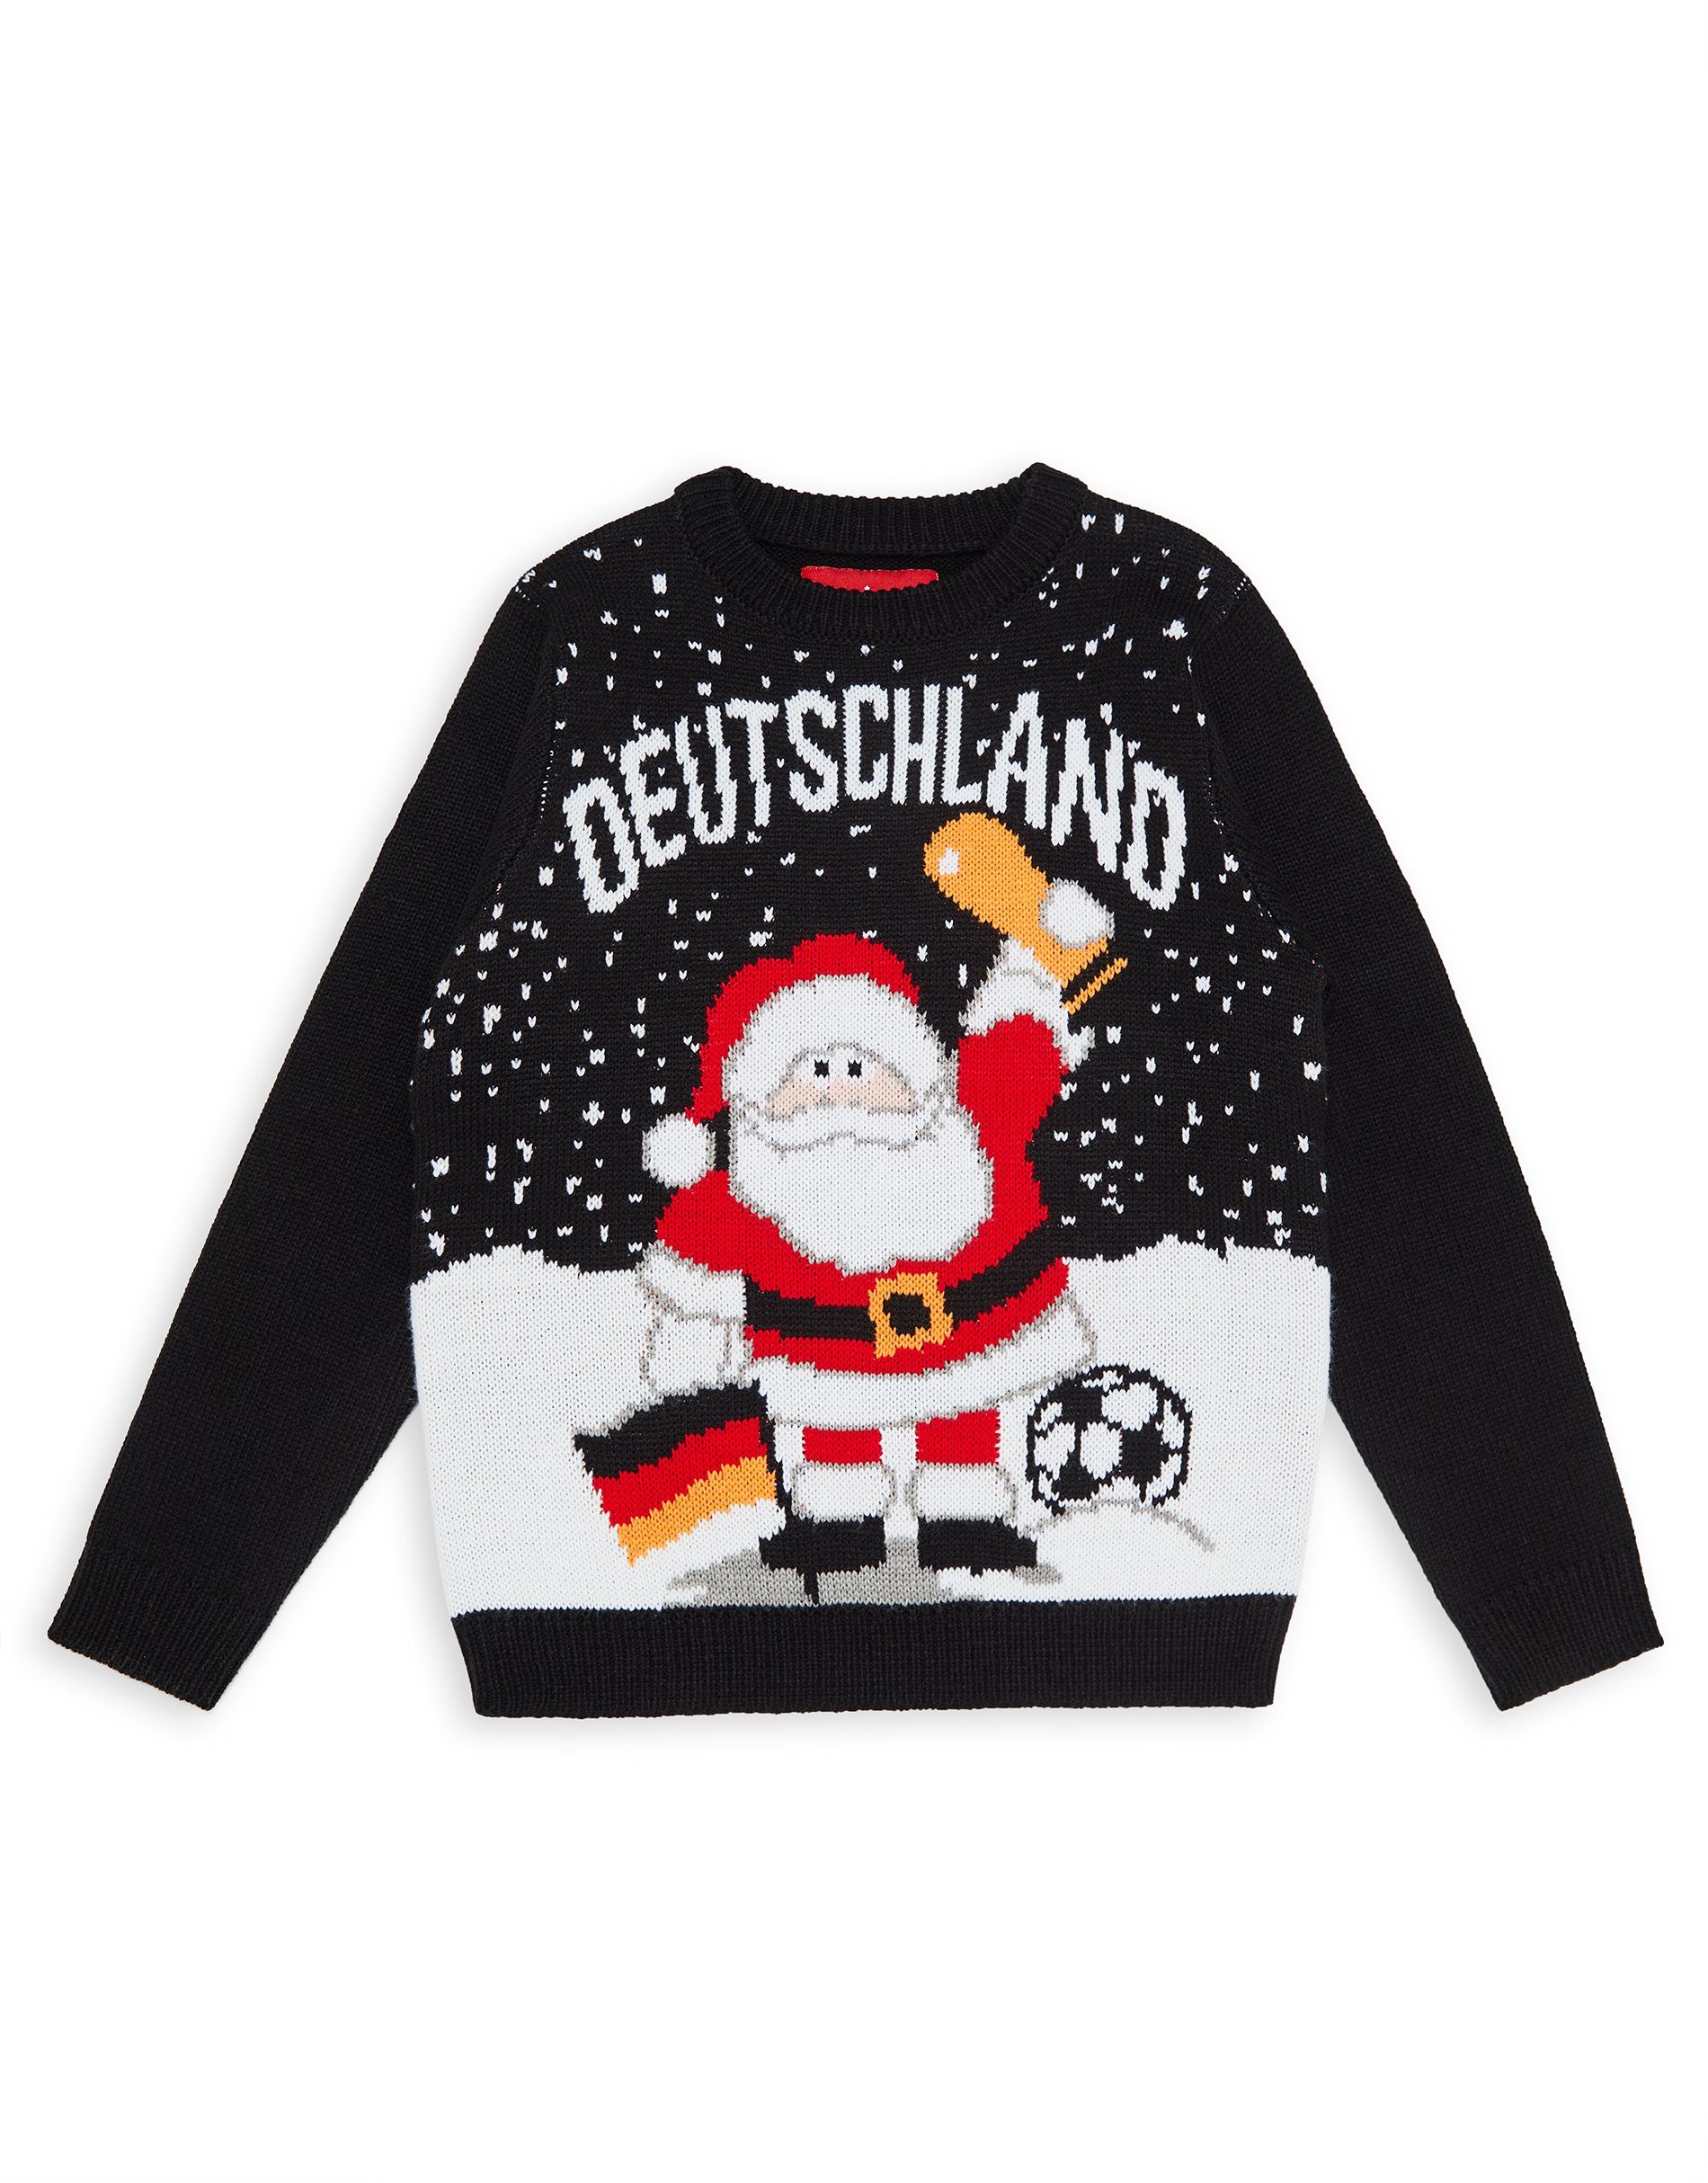 Threadboys Weihnachtspullover THB Xmas Jumper Germany Black- schwarz